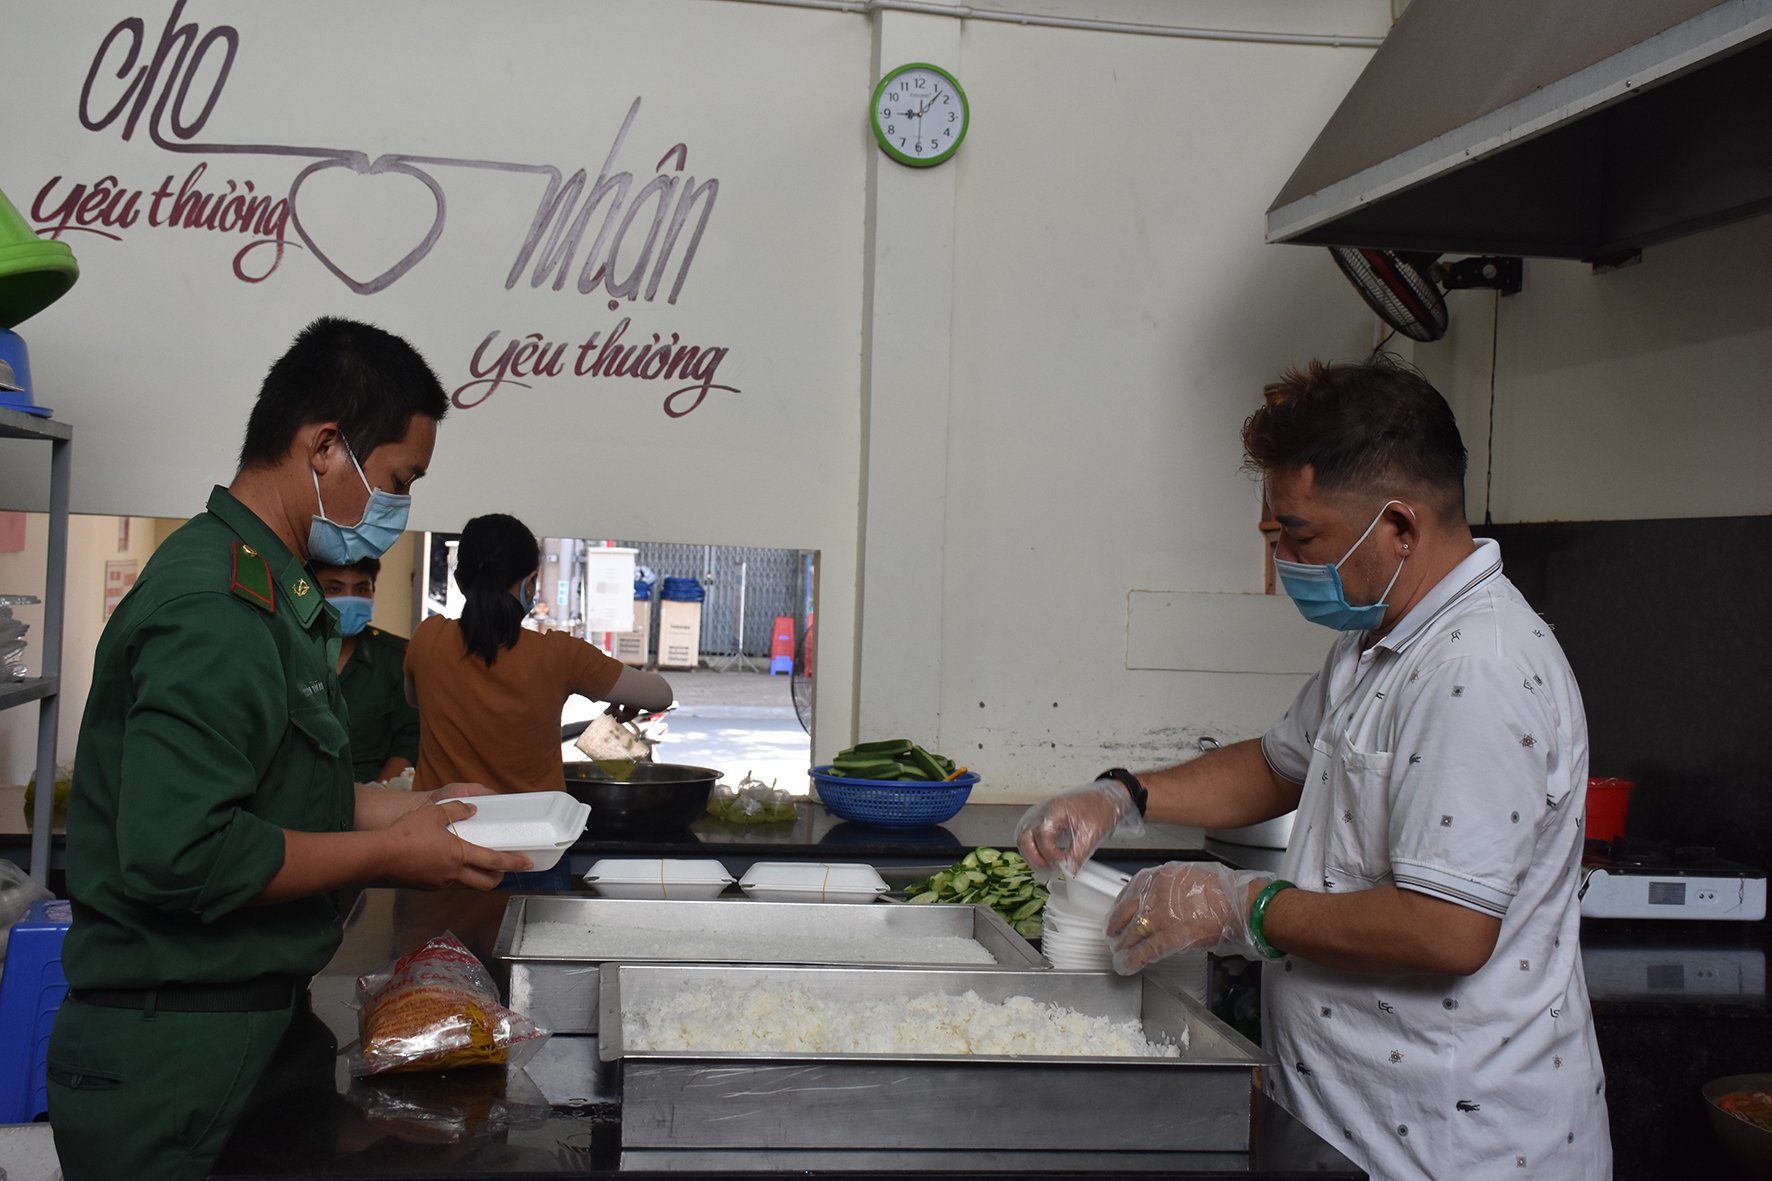 Thành viên “Bếp ăn 0 đồng” đóng hộp cơm chuẩn bị mang đến khu cách ly và trao cho lao động nghèo.